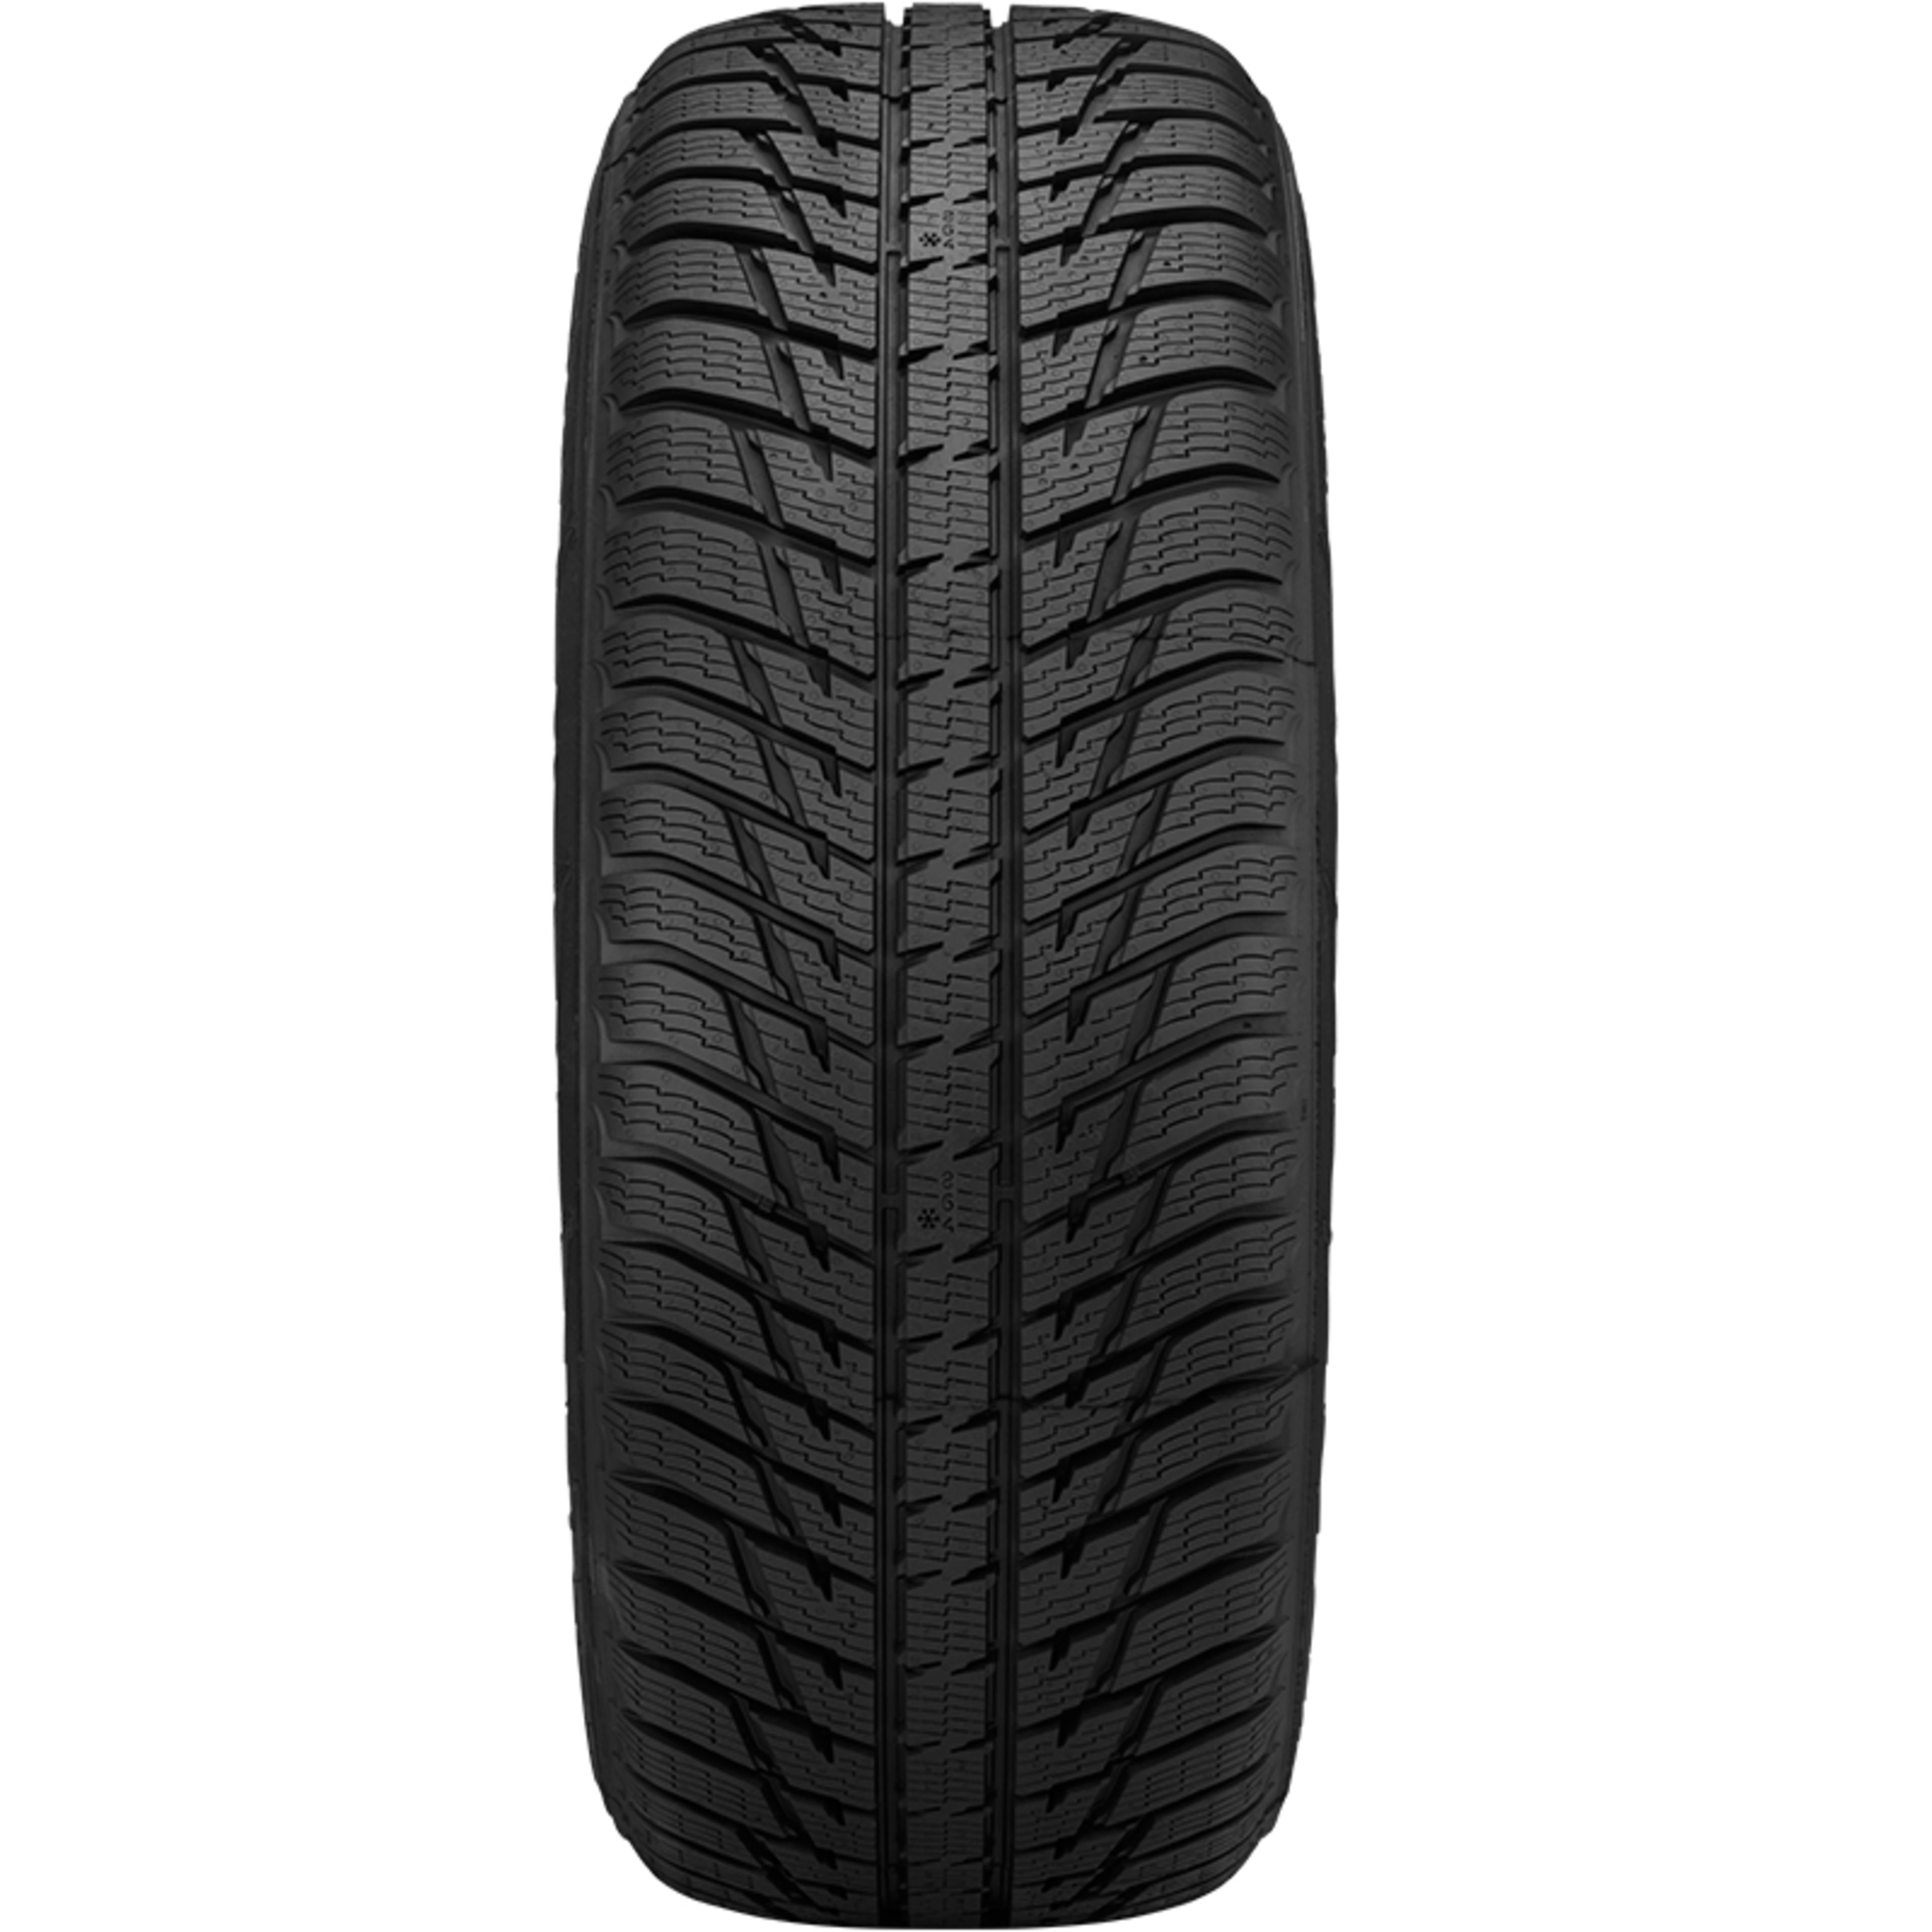 | Nokian SimpleTire Tires Buy WRG3 SUV Online